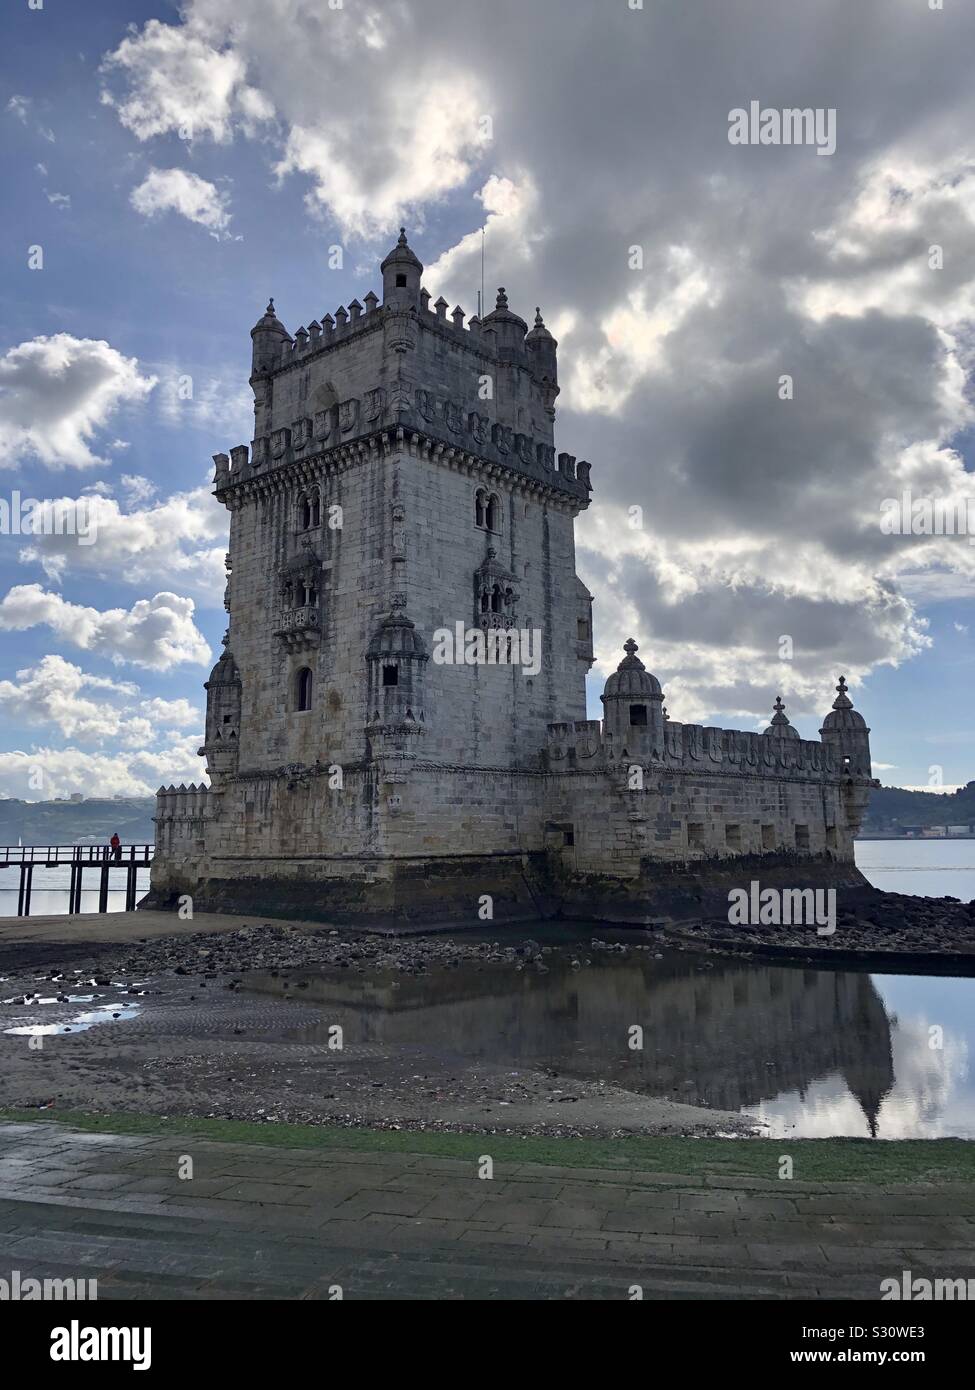 Der Torre de Belém an einem bewölkten Tag in Lissabon, Portugal. Stockfoto